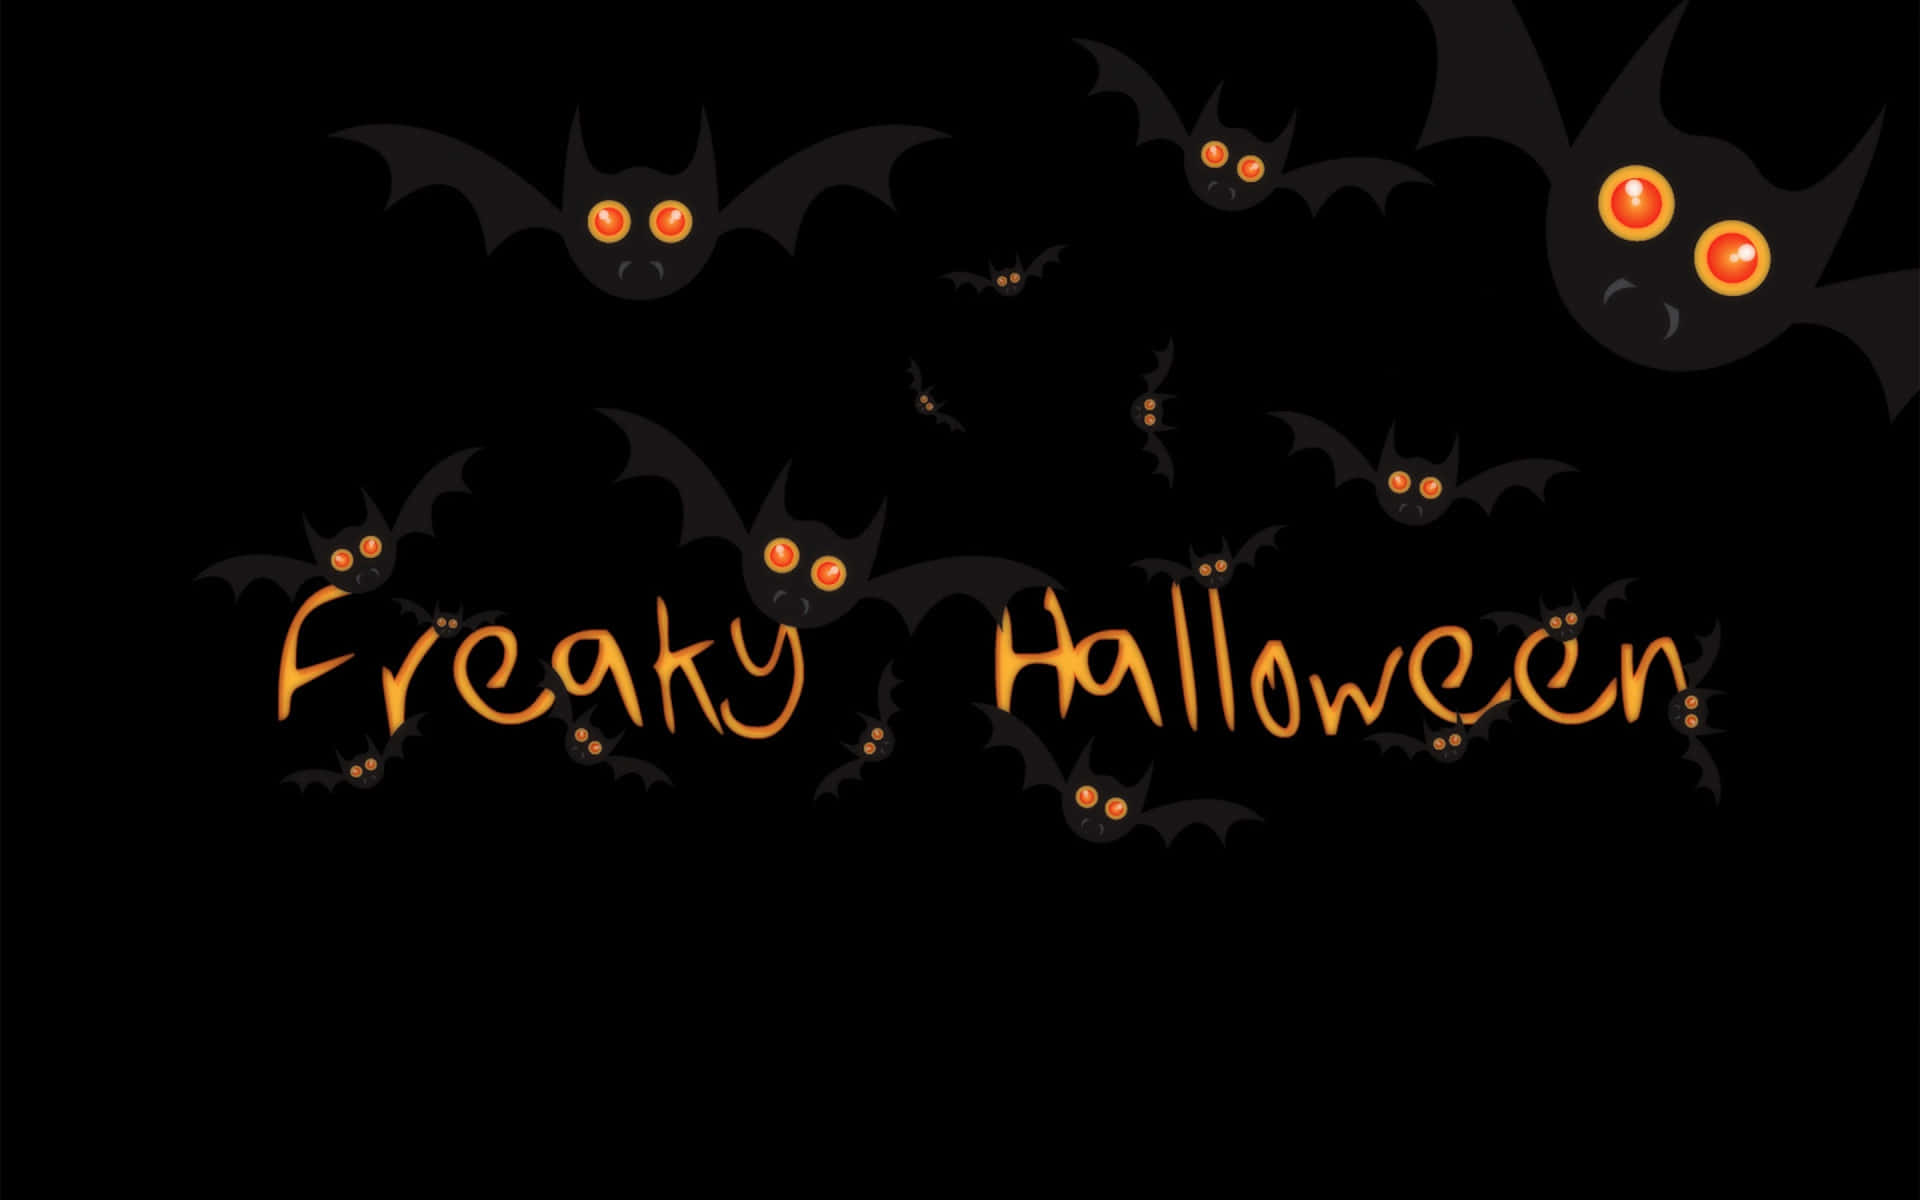 Kommein Halloween-stimmung Mit Diesem Festlichen Macbook! Wallpaper